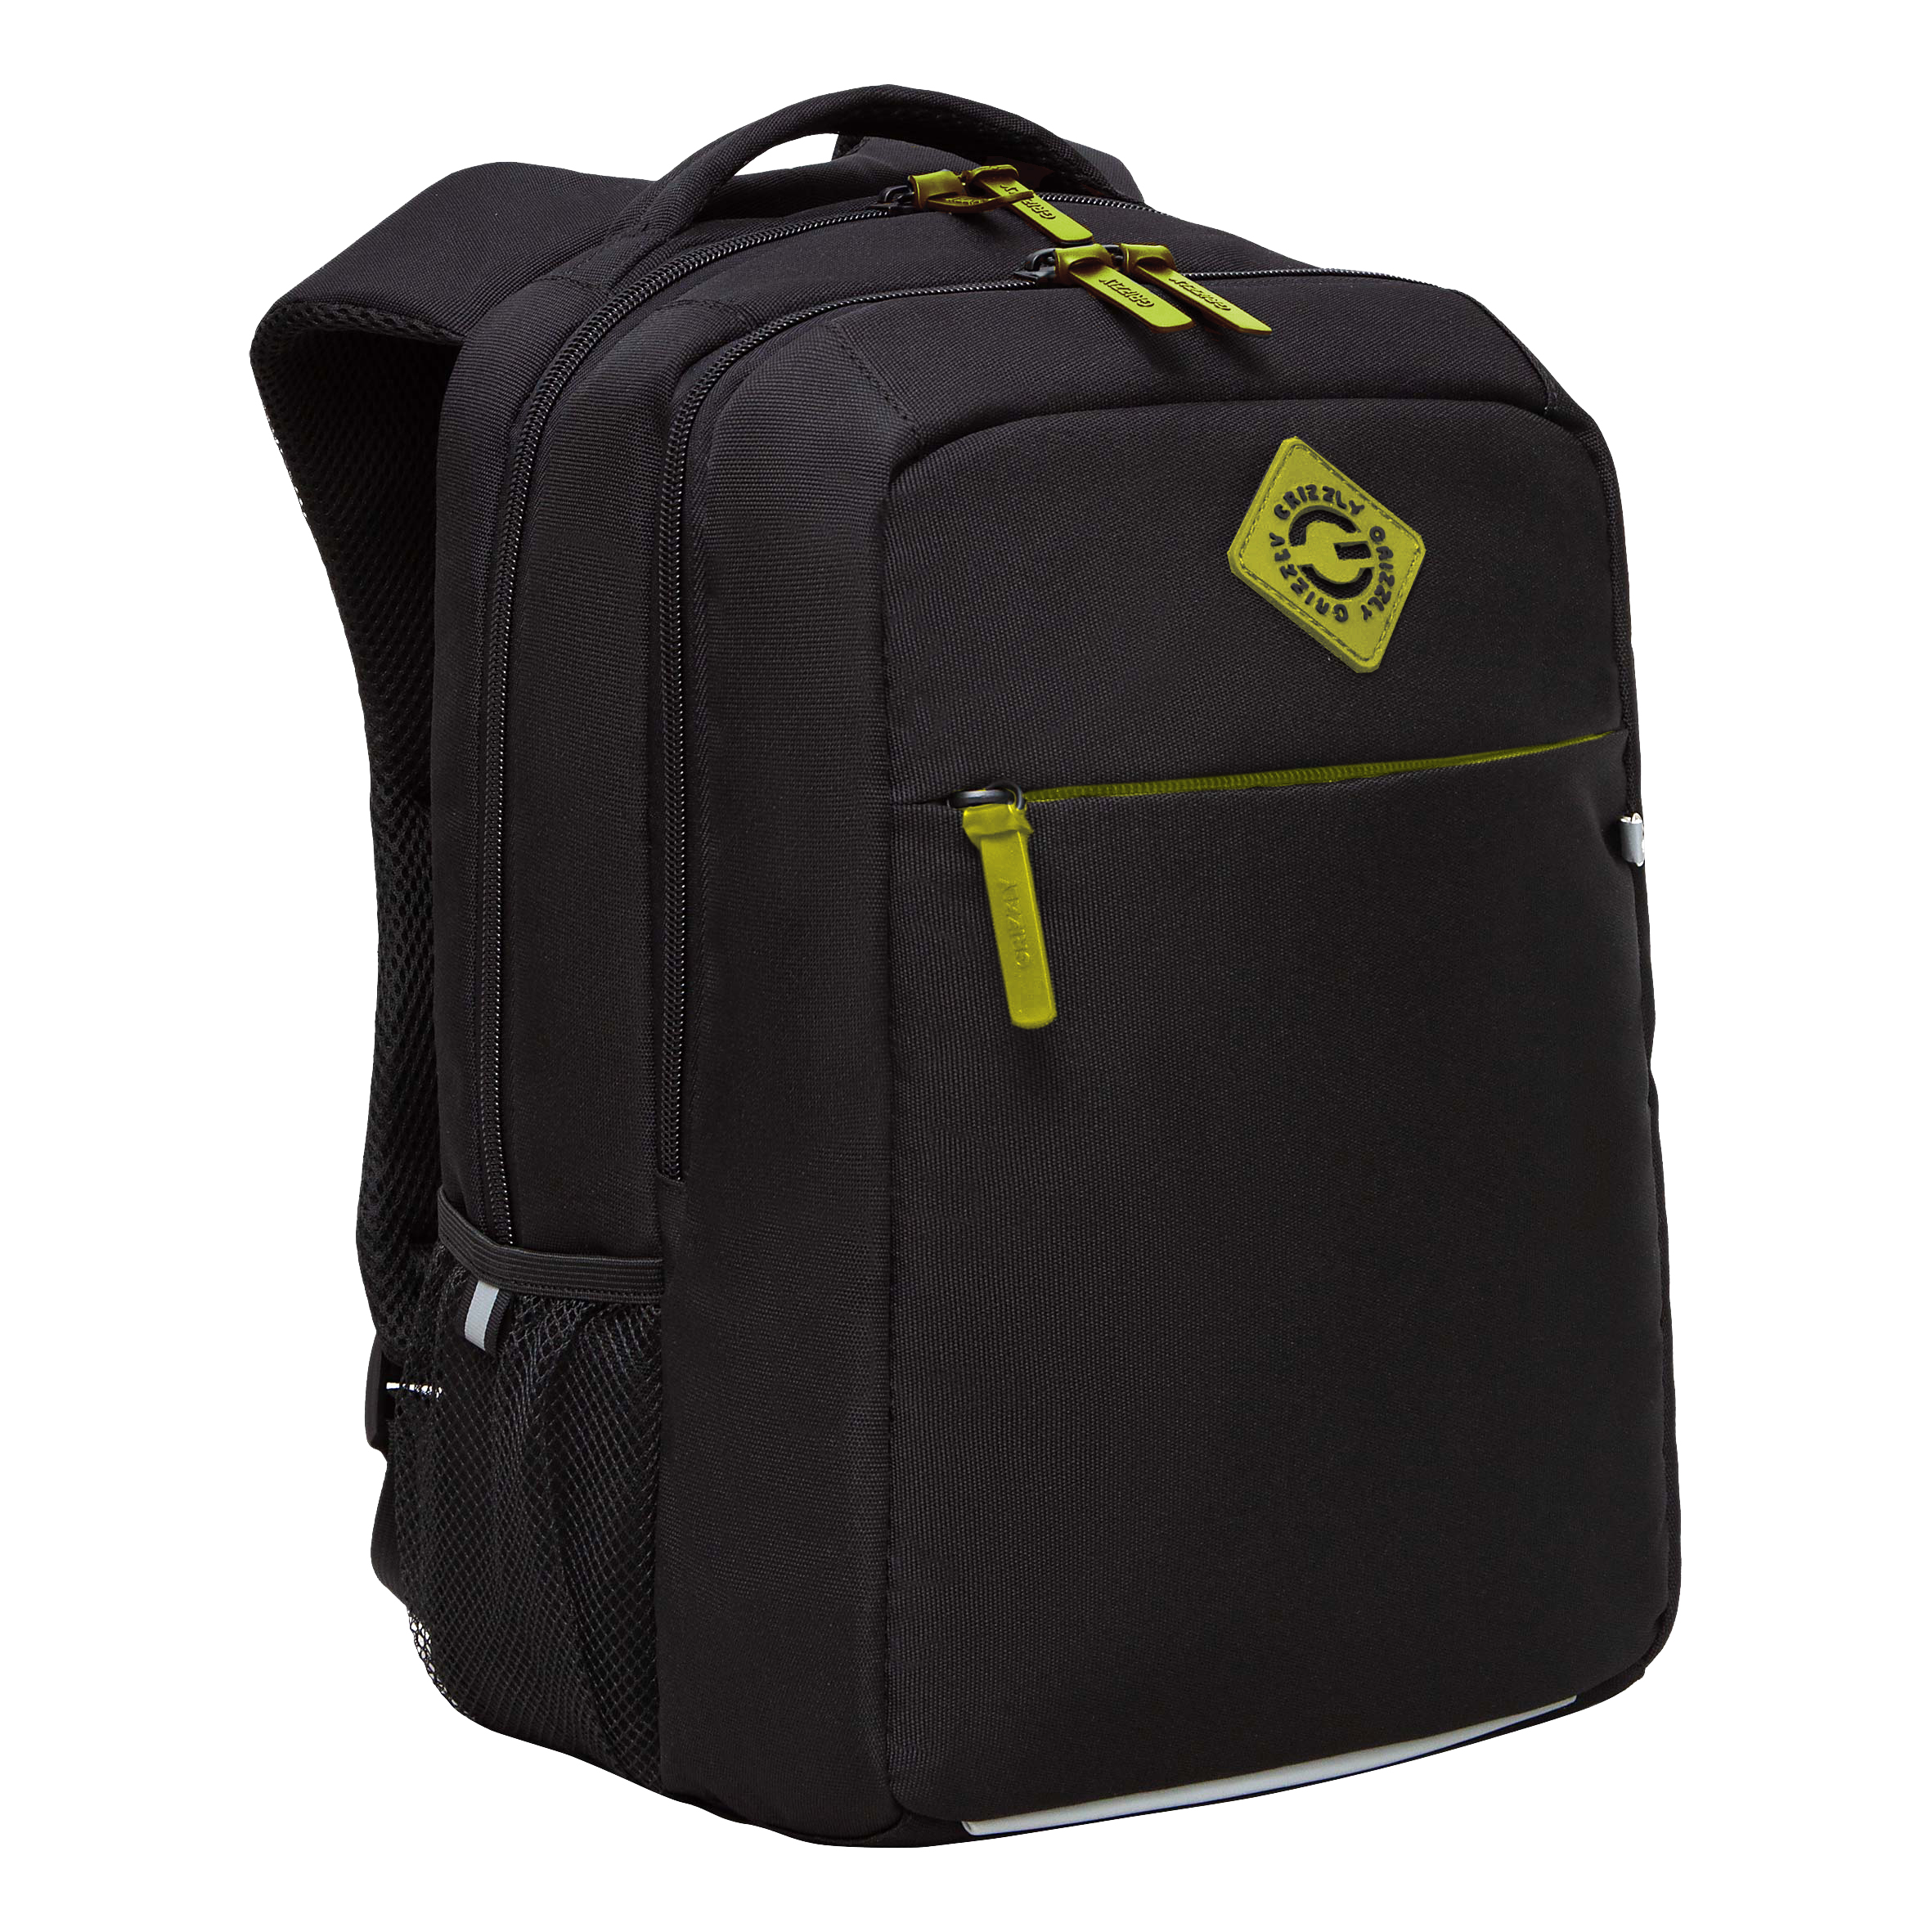 Рюкзак GRIZZLY с карманом для ноутбука 13, анатомический, для мальчика RB-456-12 рюкзак для ноутбука 15 6 portcase kbp 132gr